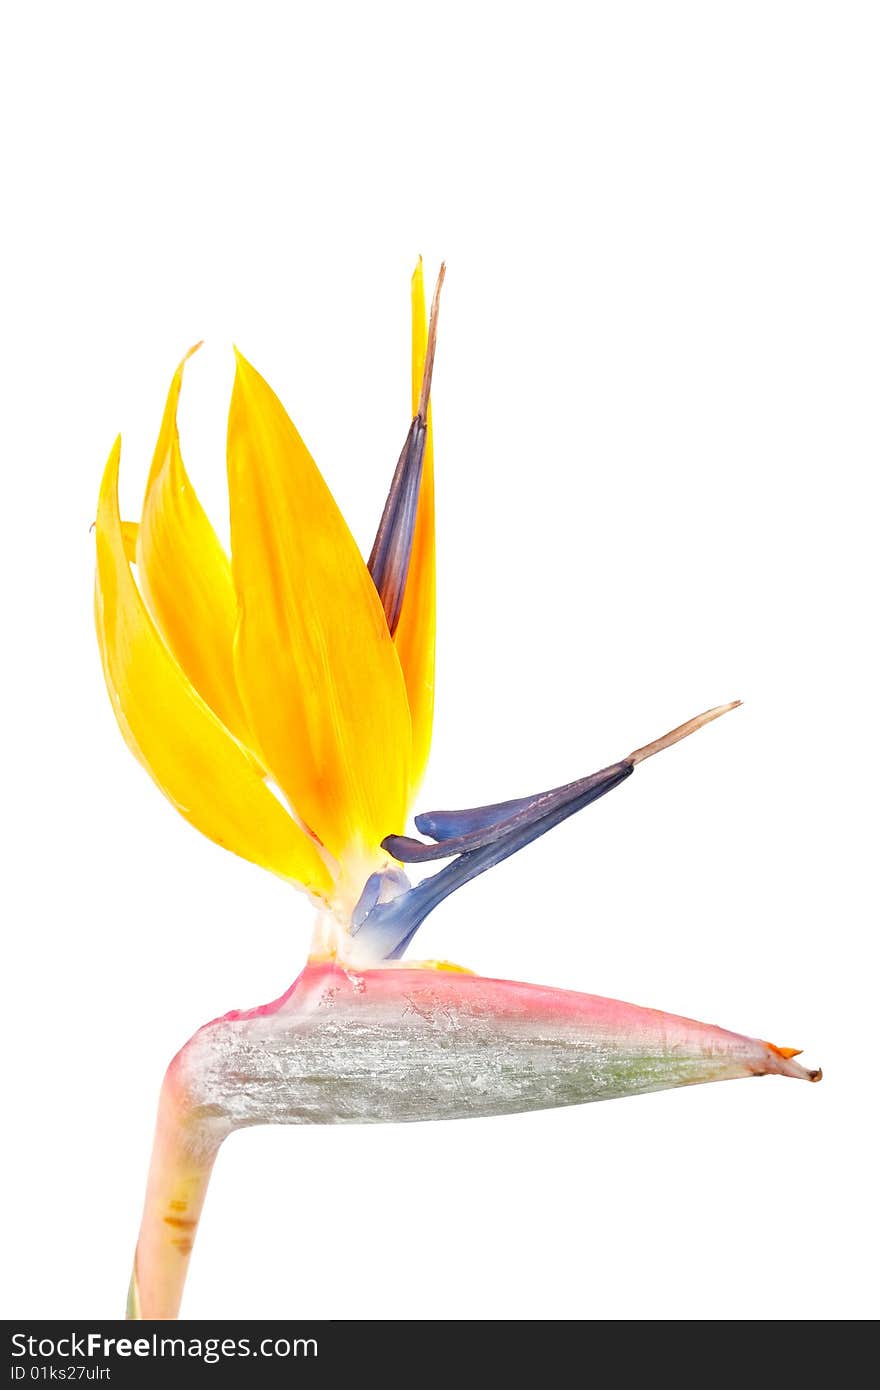 Bird of paradise flower, Strelitzia, isolated on white background